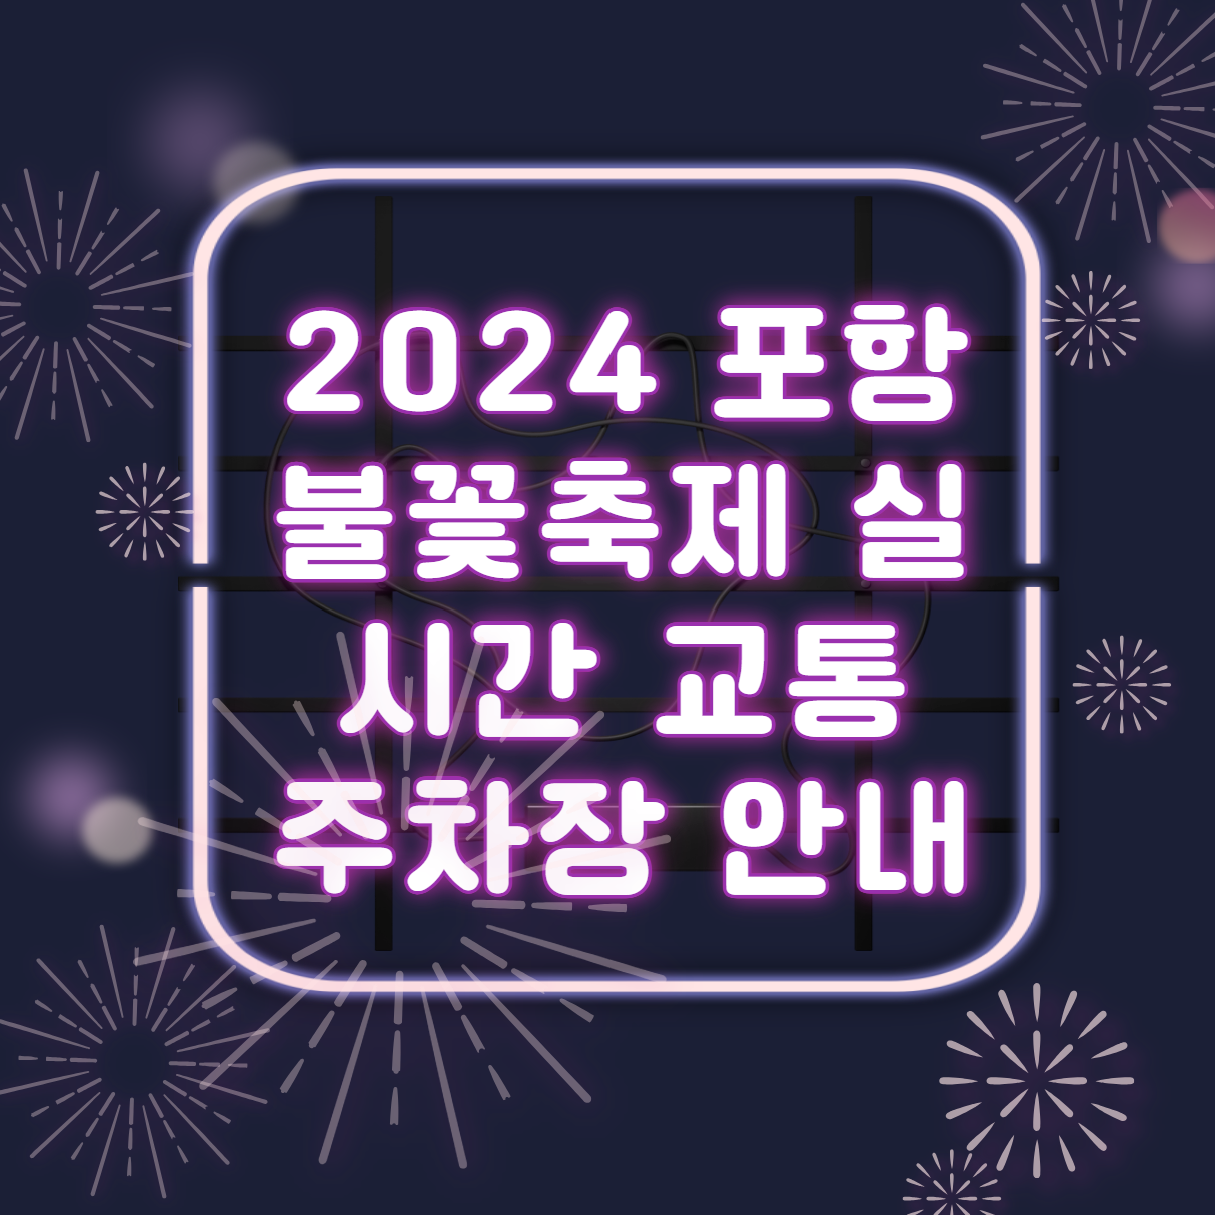 2024 포항 불꽃축제 실시간 교통 주차장 안내